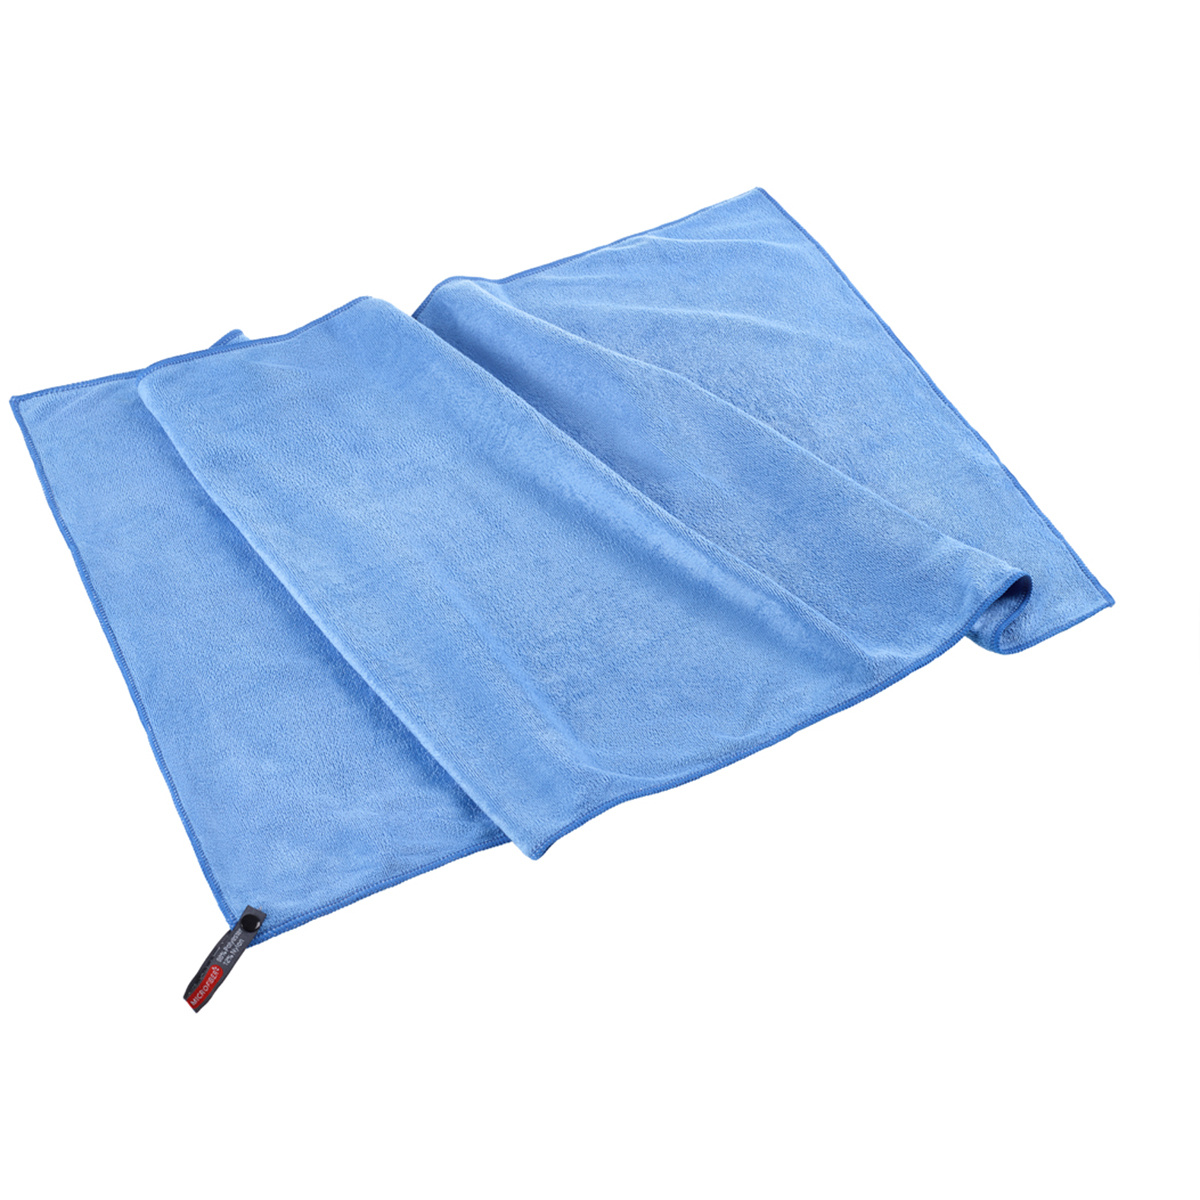 LACD Soft Handtuch (Größe L, blau)